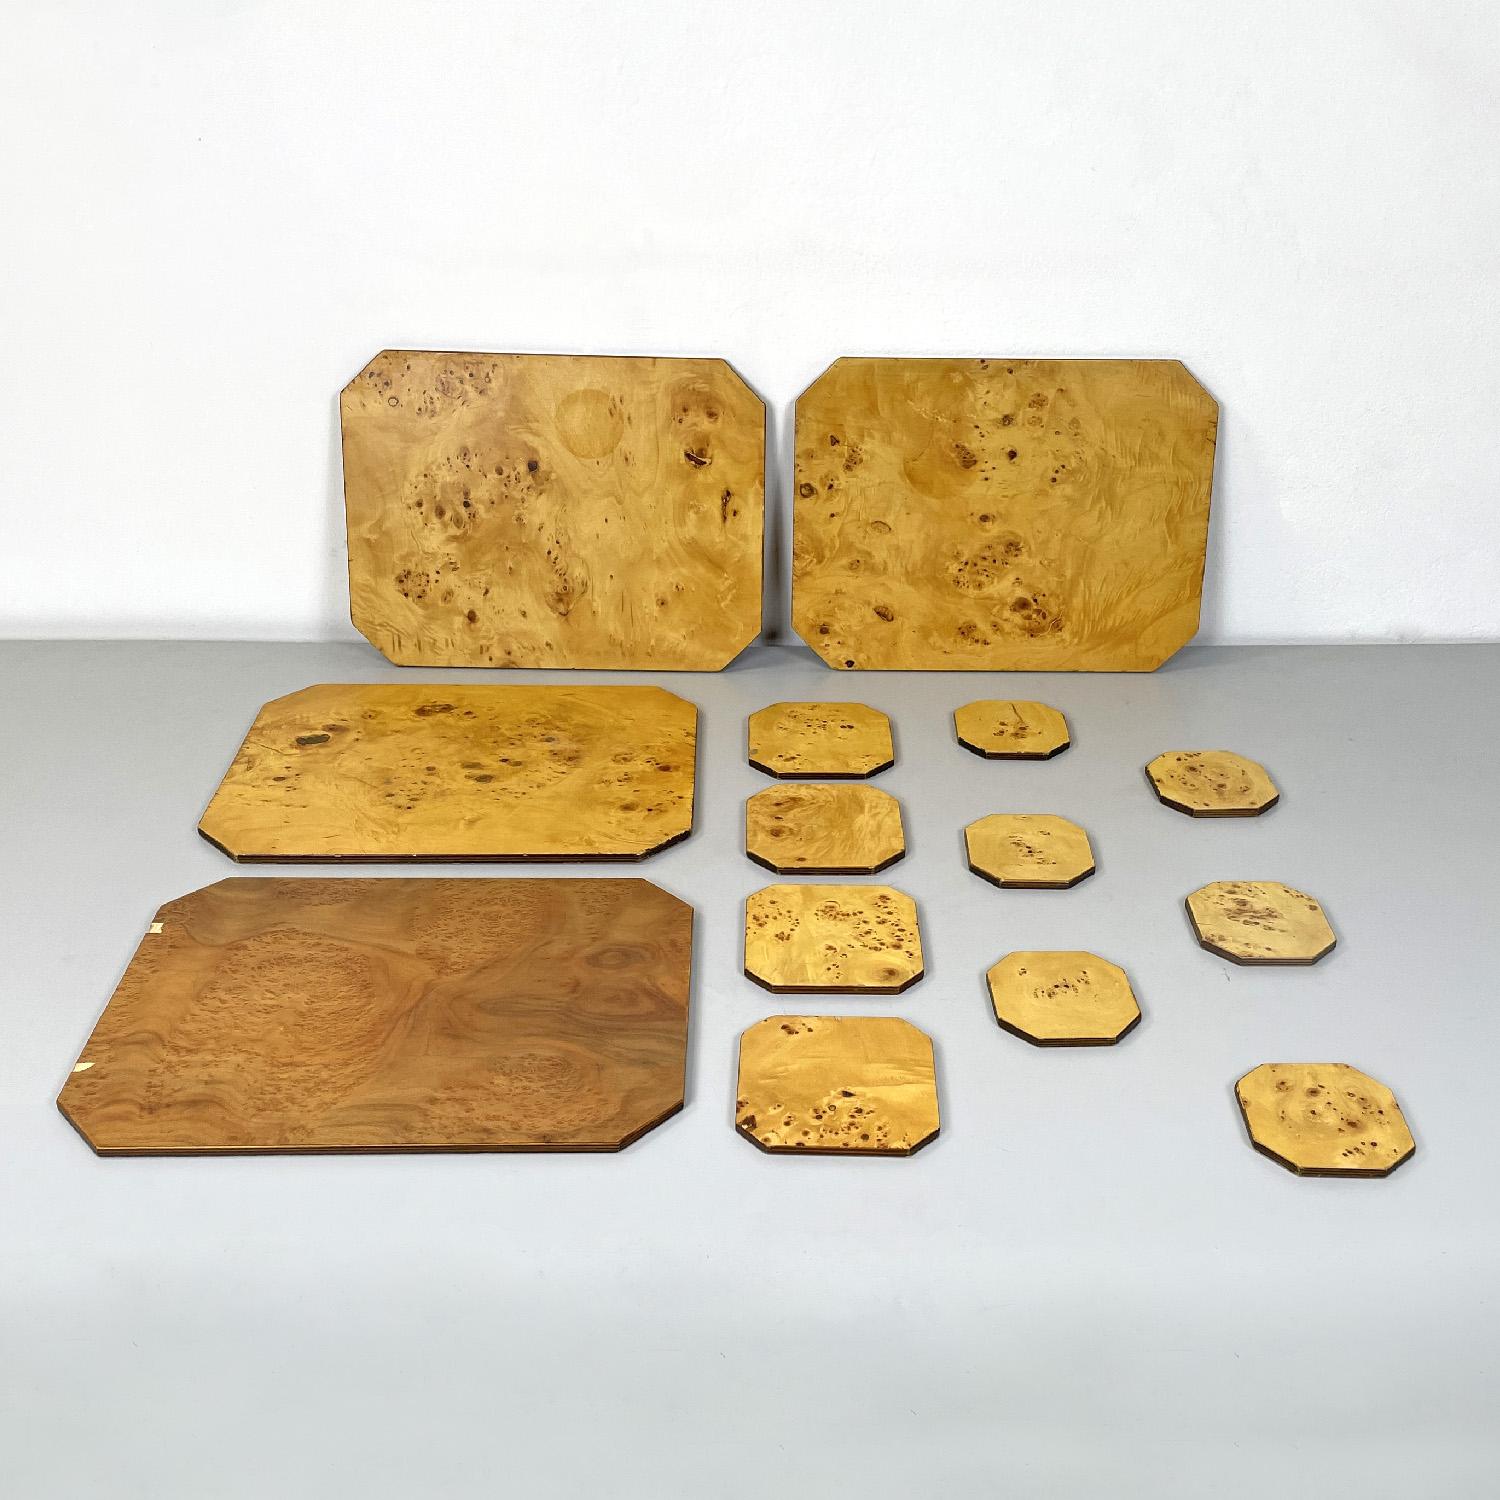 Service de table moderne italien en bois par Felice Antonio Botta Designer, 1973
Ensemble de quatre sets de table, quatre grands sous-verres et six petits sous-verres en bois. Tous les éléments de l'ensemble ont des coins coupés. L'un des quatre